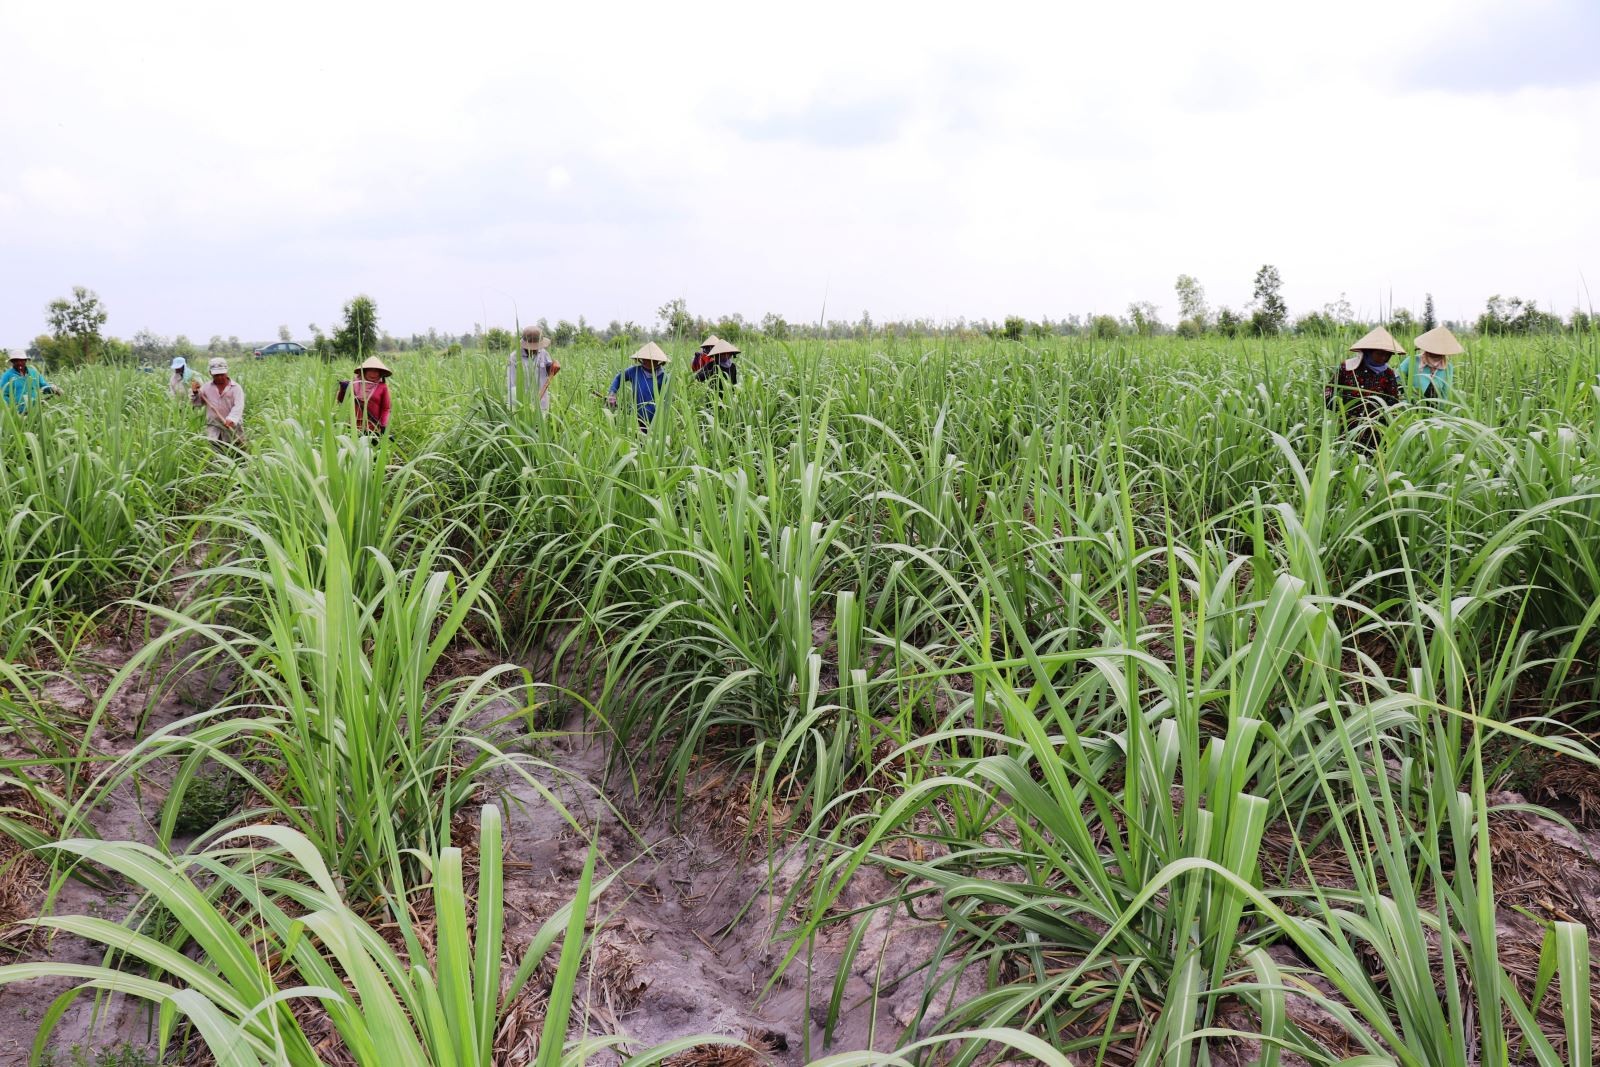 Nông dân trồng mía Tây Ninh chăm sóc mía nguyên liệu vụ 2019 - 2020. Ảnh: Lê Đức Hoảnh/TTXVN